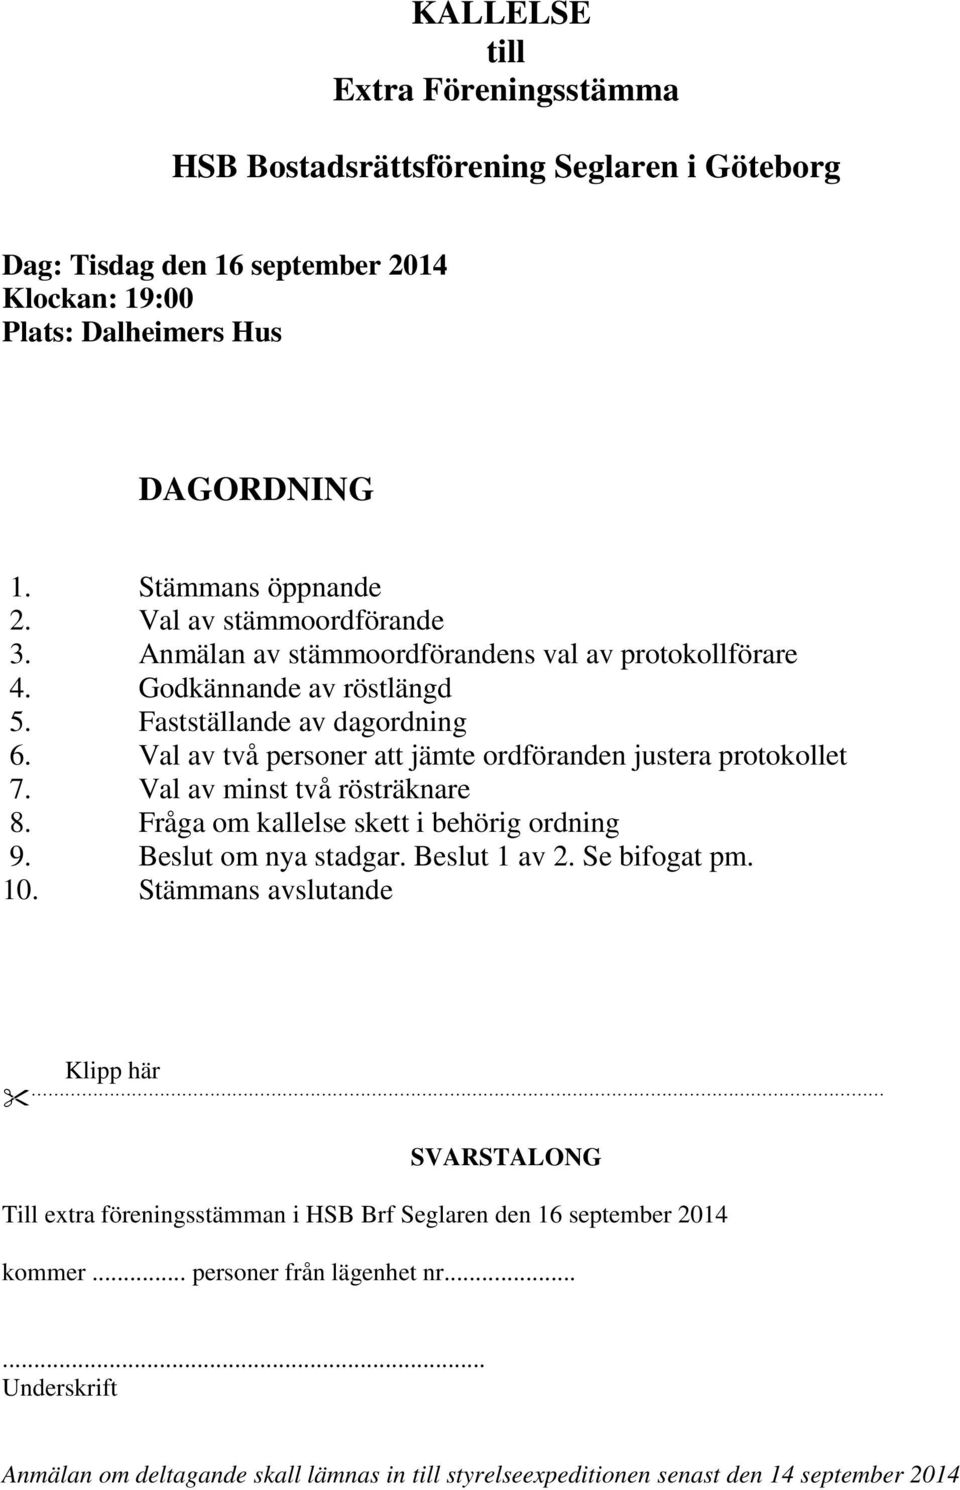 KALLELSE till Extra Föreningsstämma. HSB Bostadsrättsförening Seglaren i  Göteborg - PDF Free Download